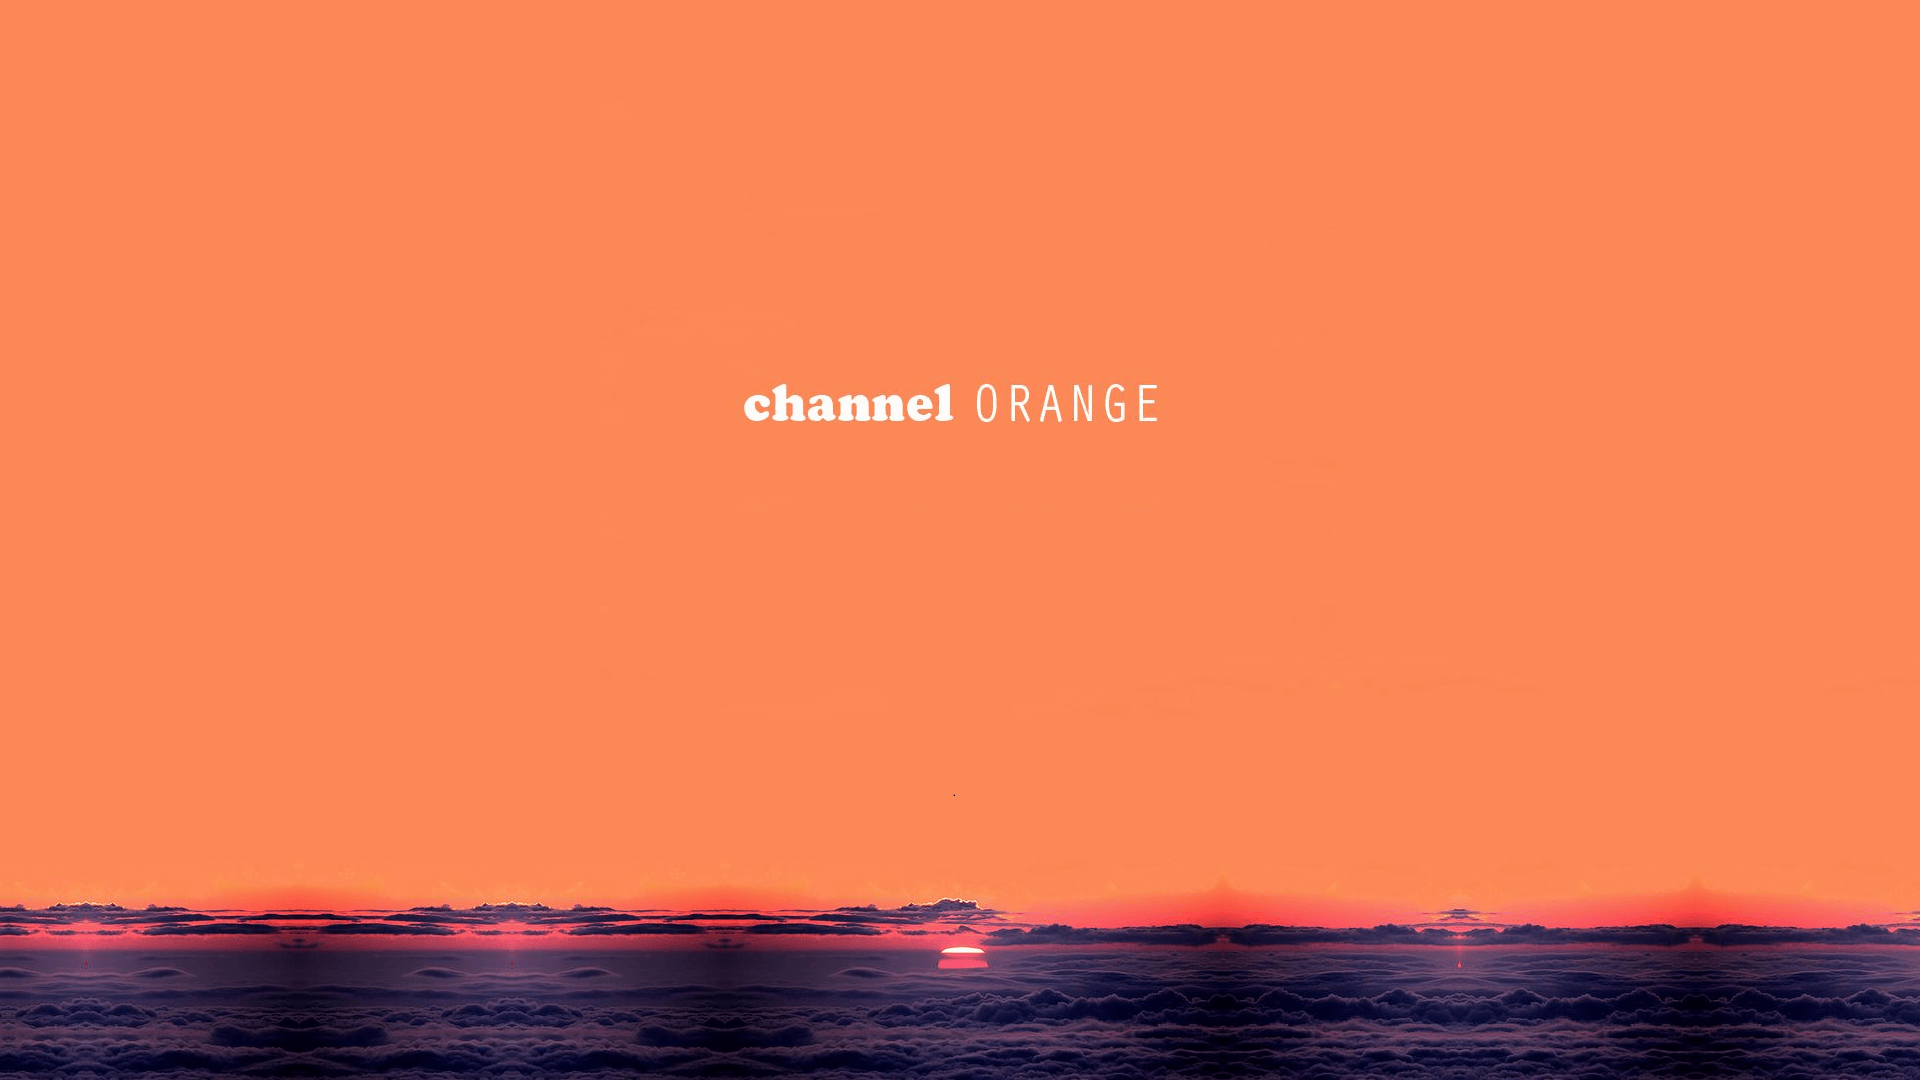 CM Designs on Twitter 5 Frank Ocean Channel Orange as a planet   Wallpaper httpstcoxyozt1waNa  Twitter